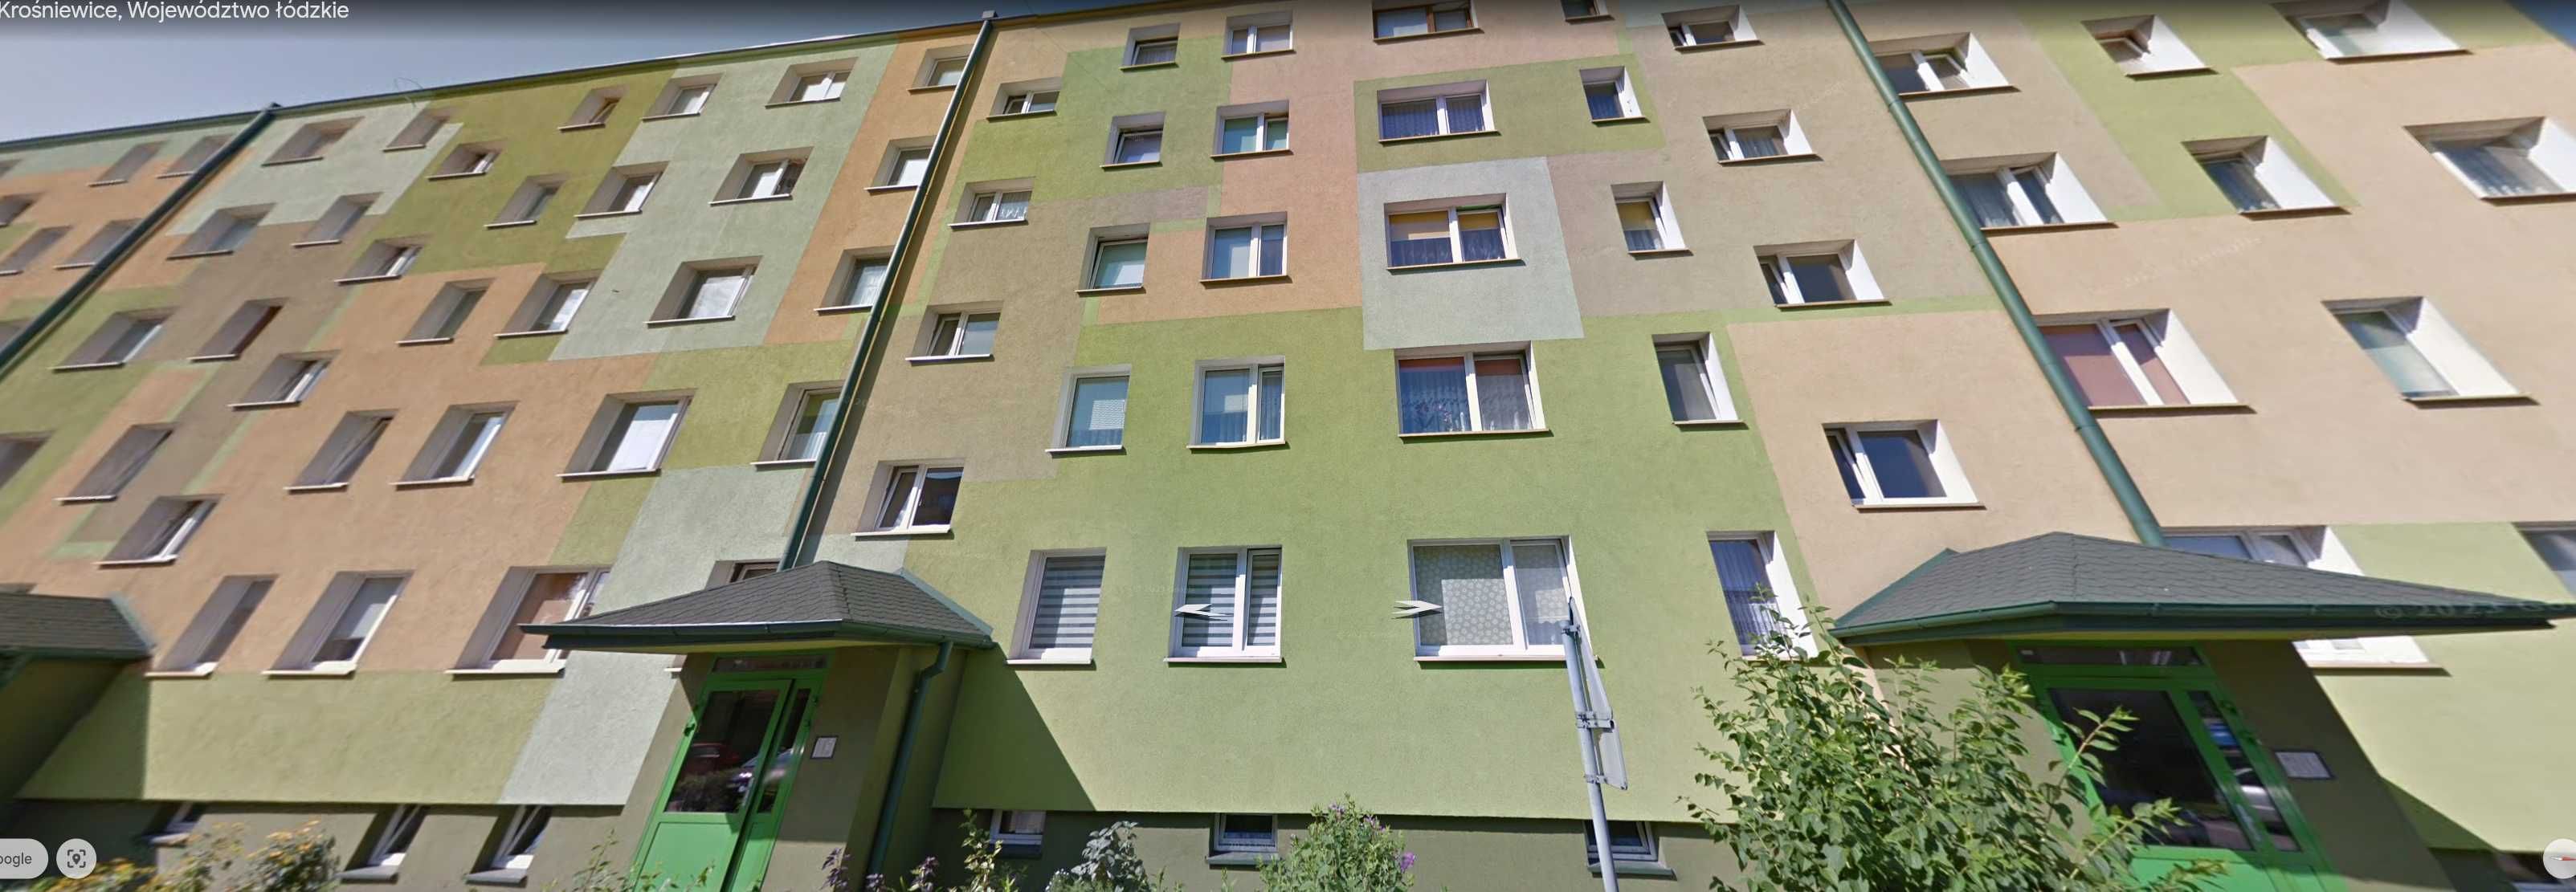 Sprzedam Mieszkanie Własnościowe w Krośniewicach